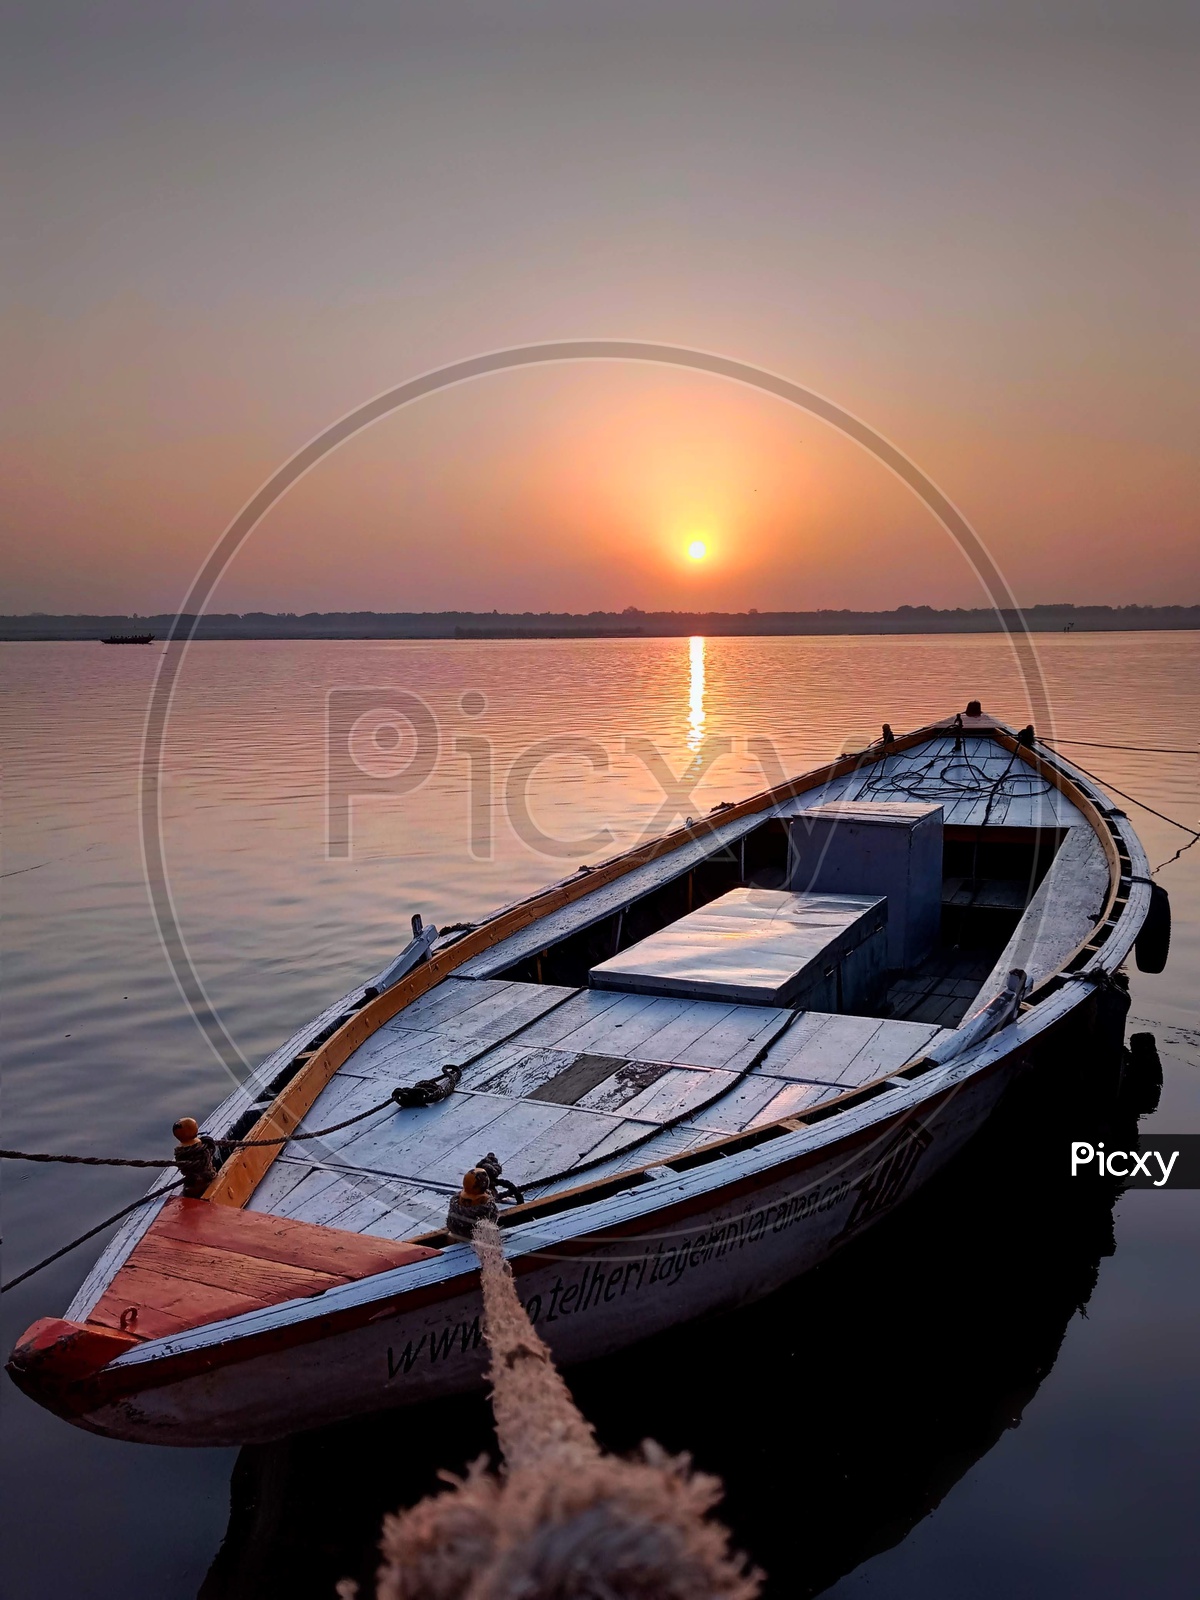 Docked boat with sunrise